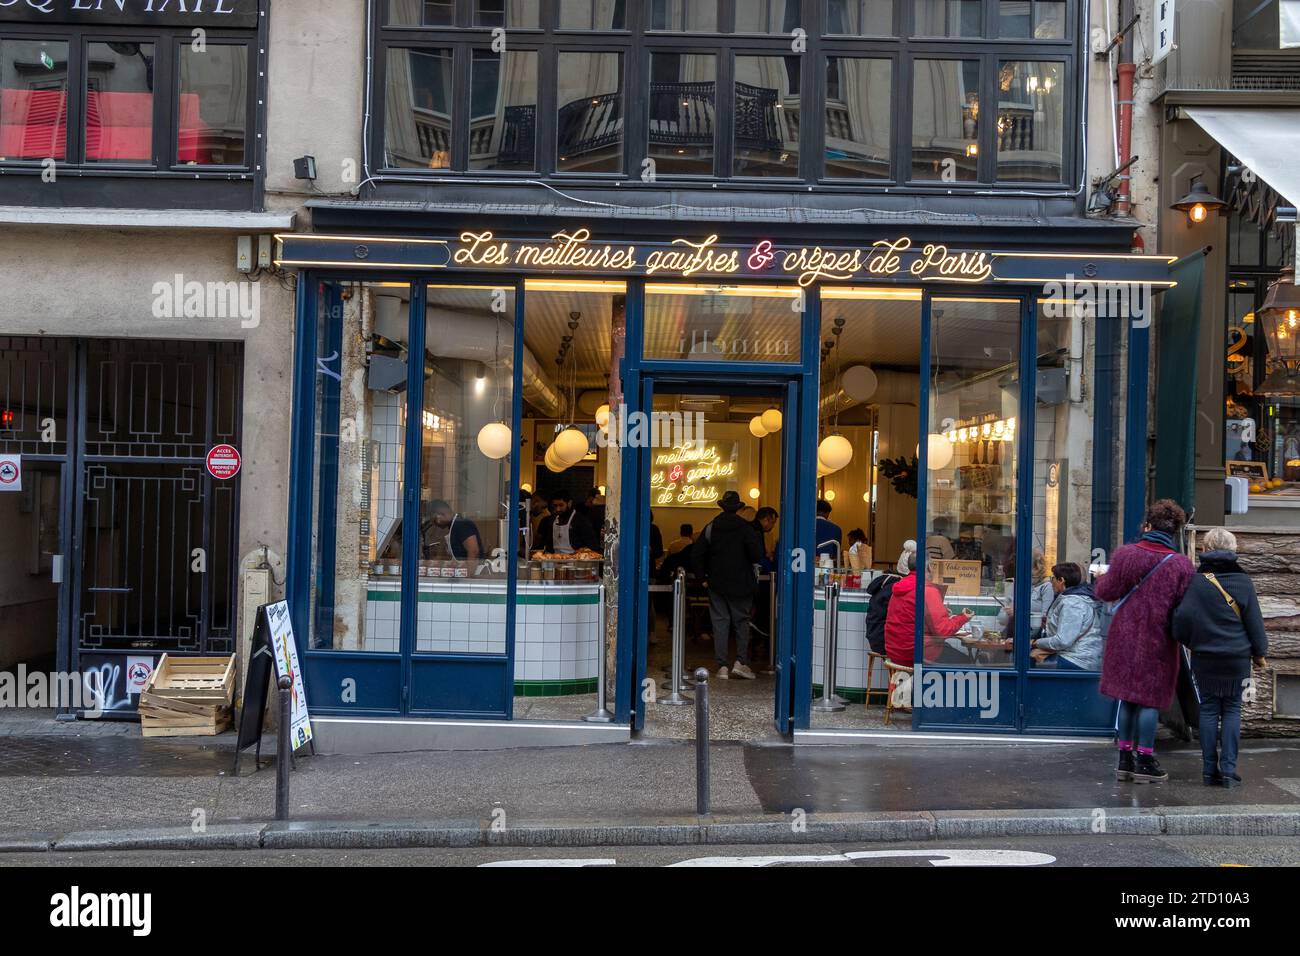 Les Meilleures crêpes et Gaufres de Paris, La Crème de Paris specialising in homemade crêpes, waffles & ice cream,on Rue du Faubourg Montmartre,Paris Stock Photo